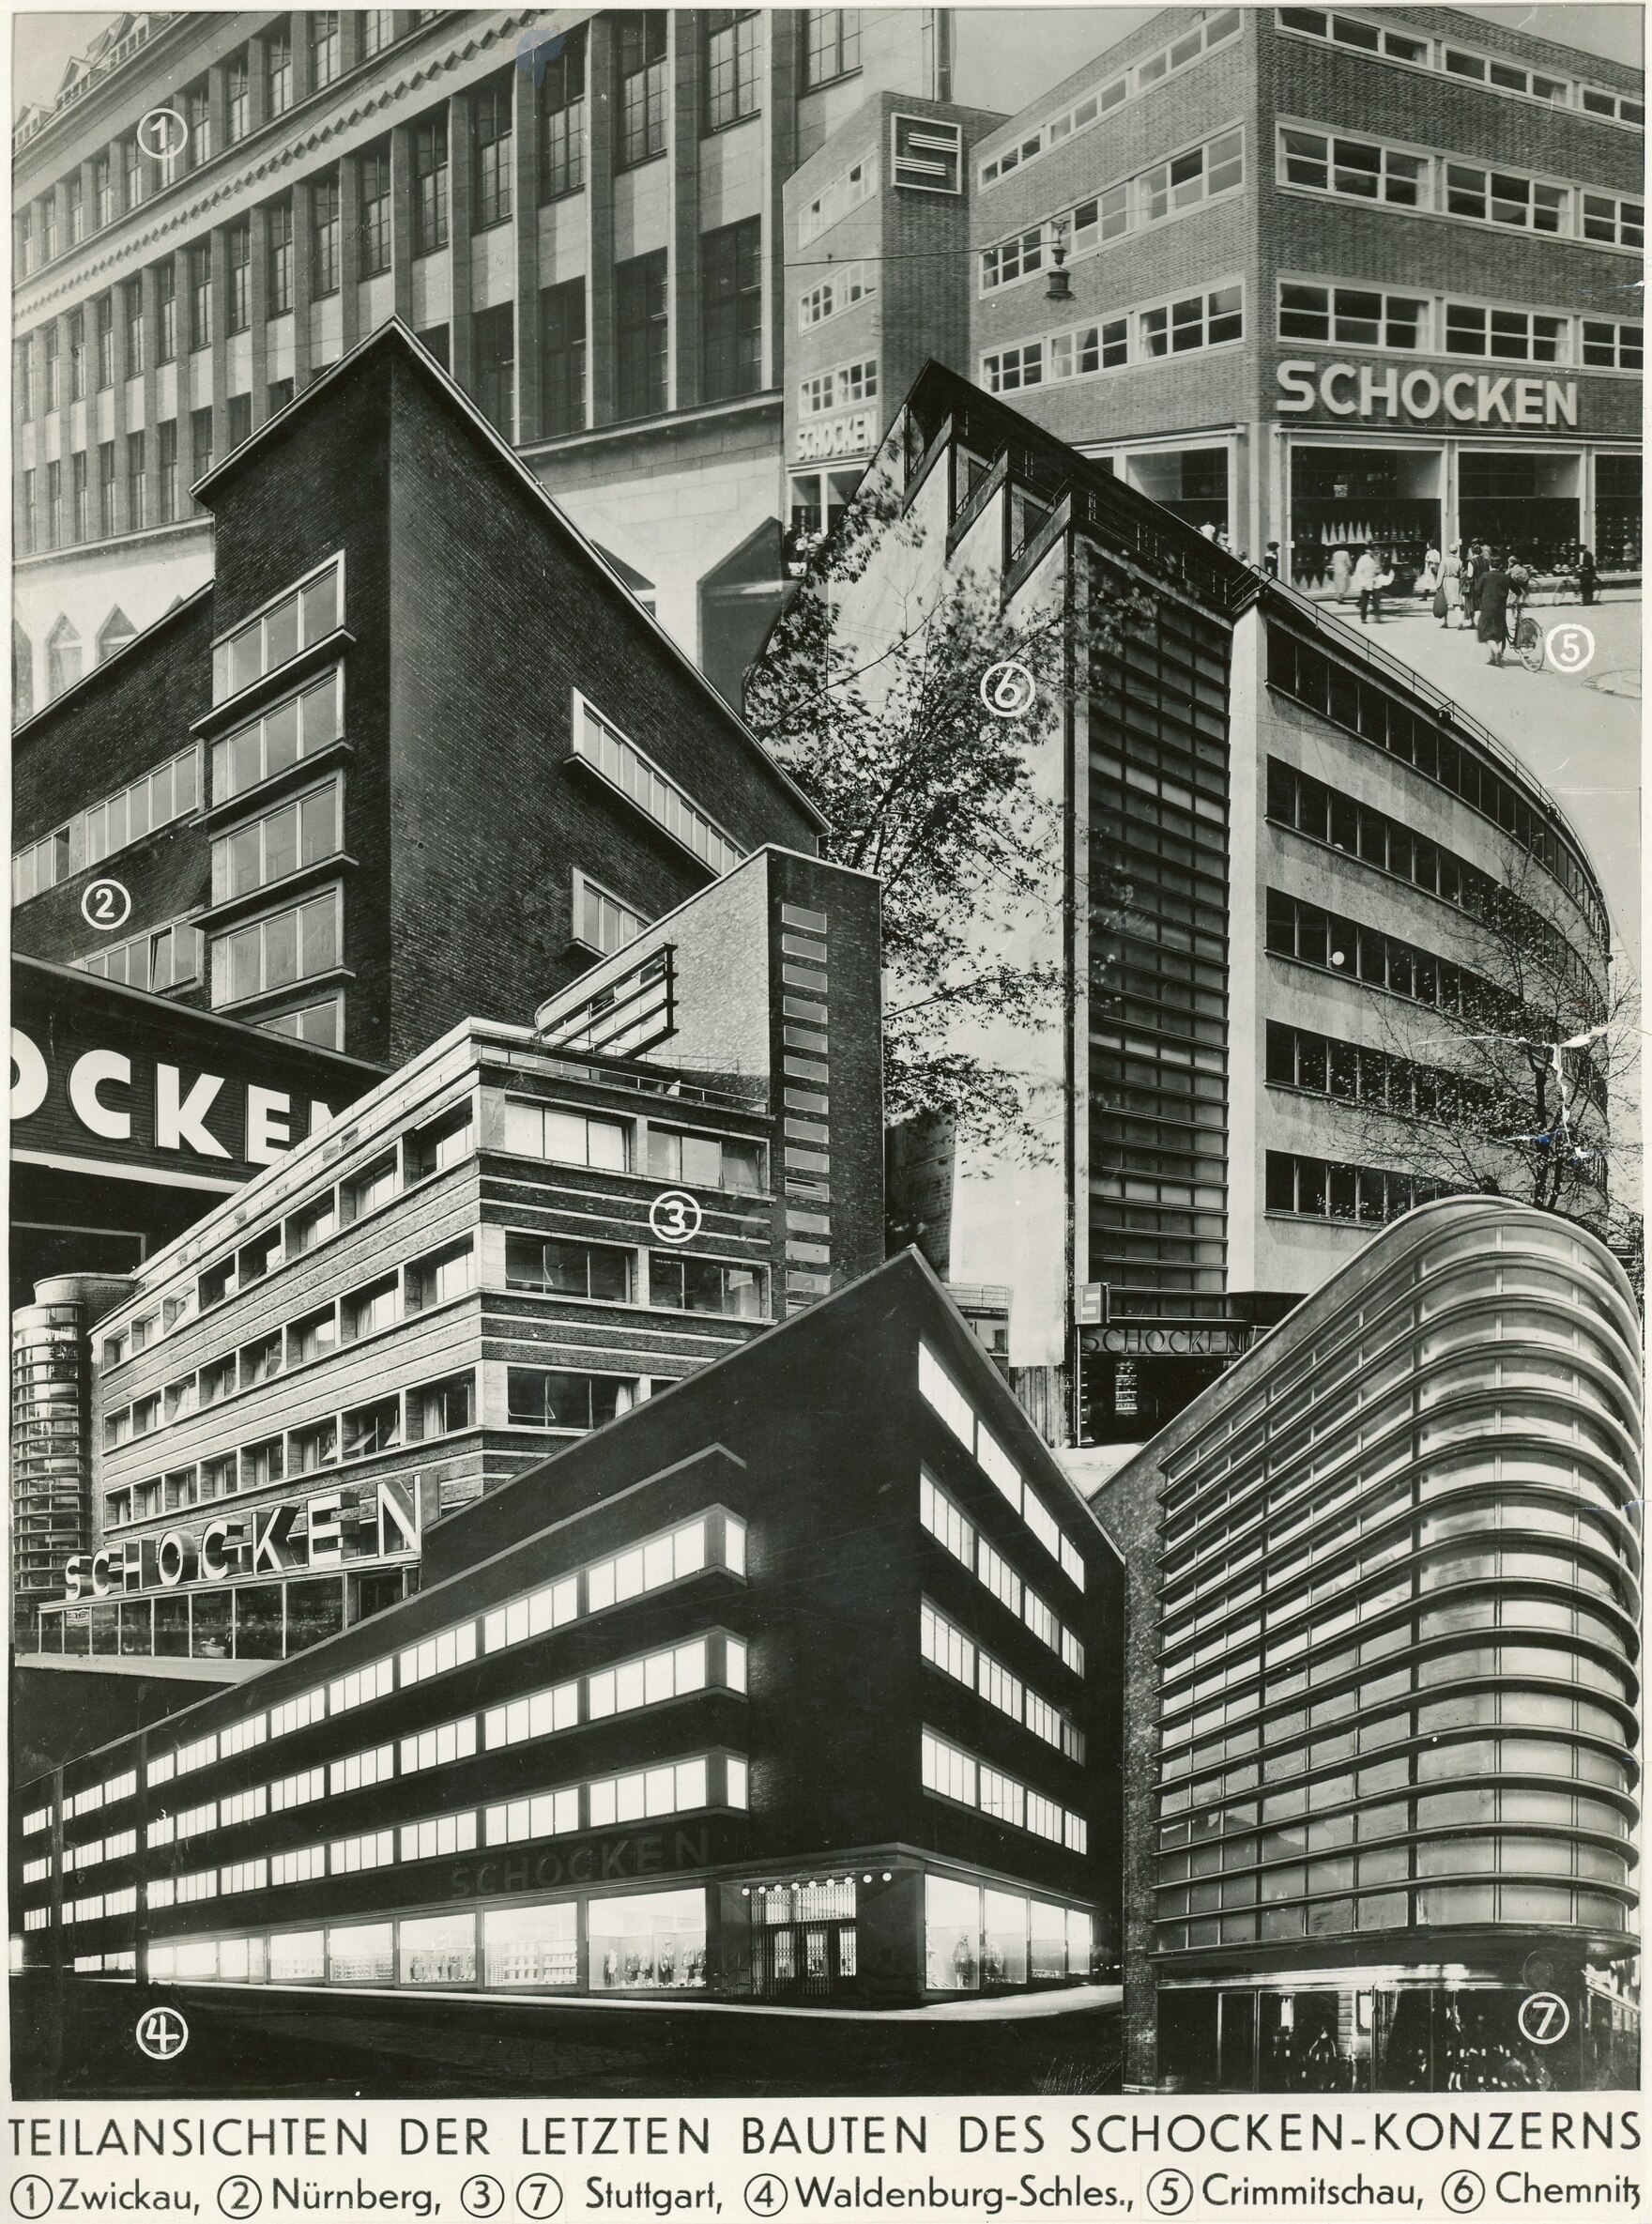 S/W-Collage mit verschiedenen horizontal gegliederten Fassaden des Schocken-Konzerns